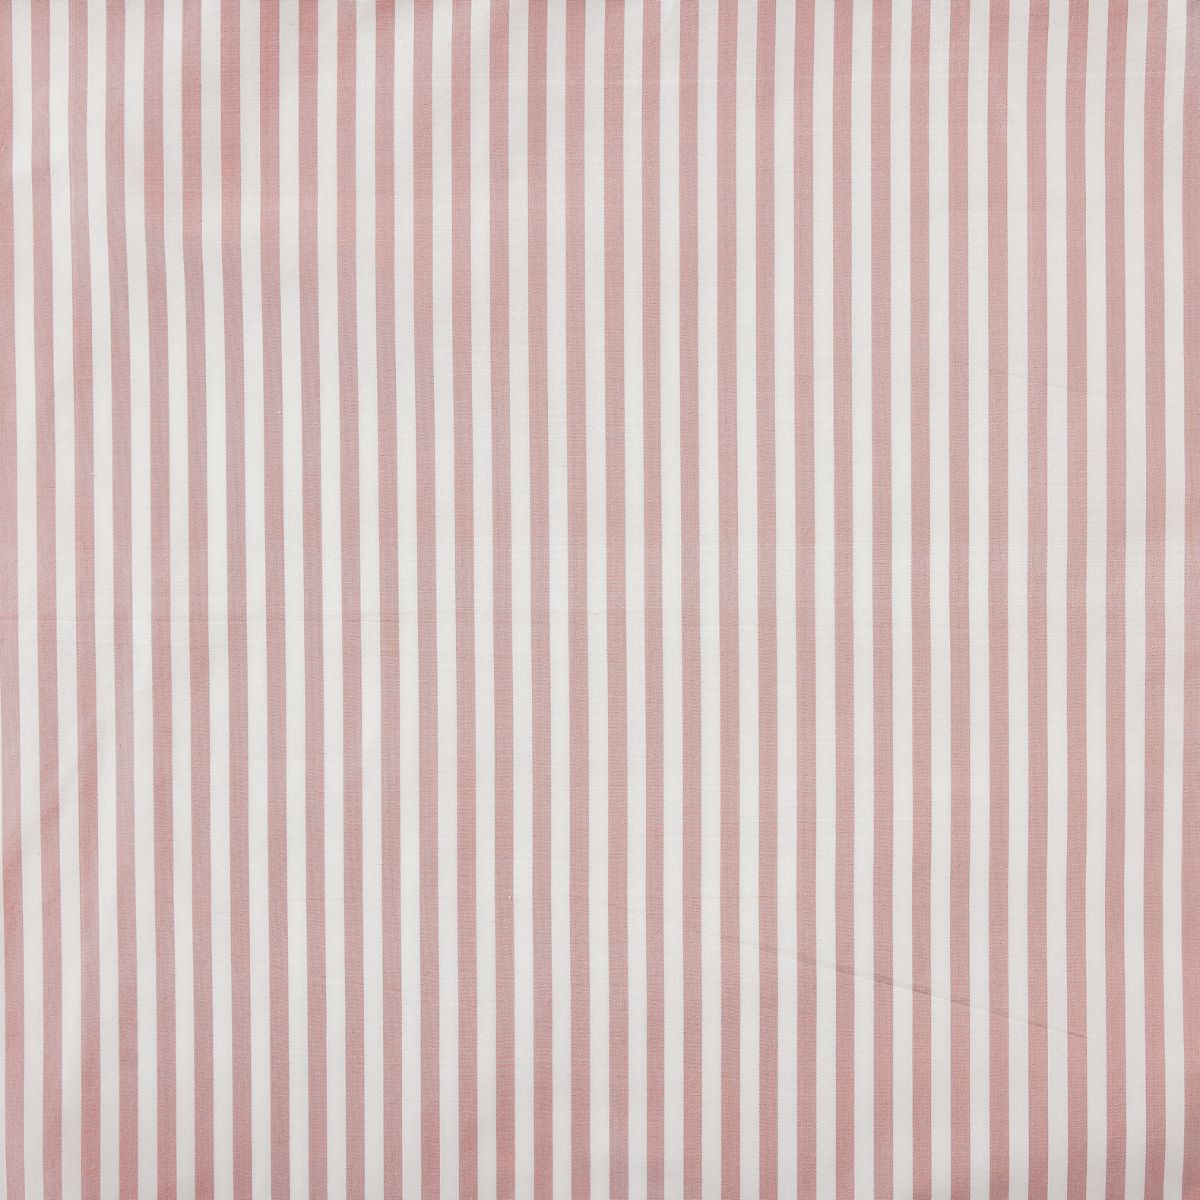 Noelle Stripe Fabric in Blush